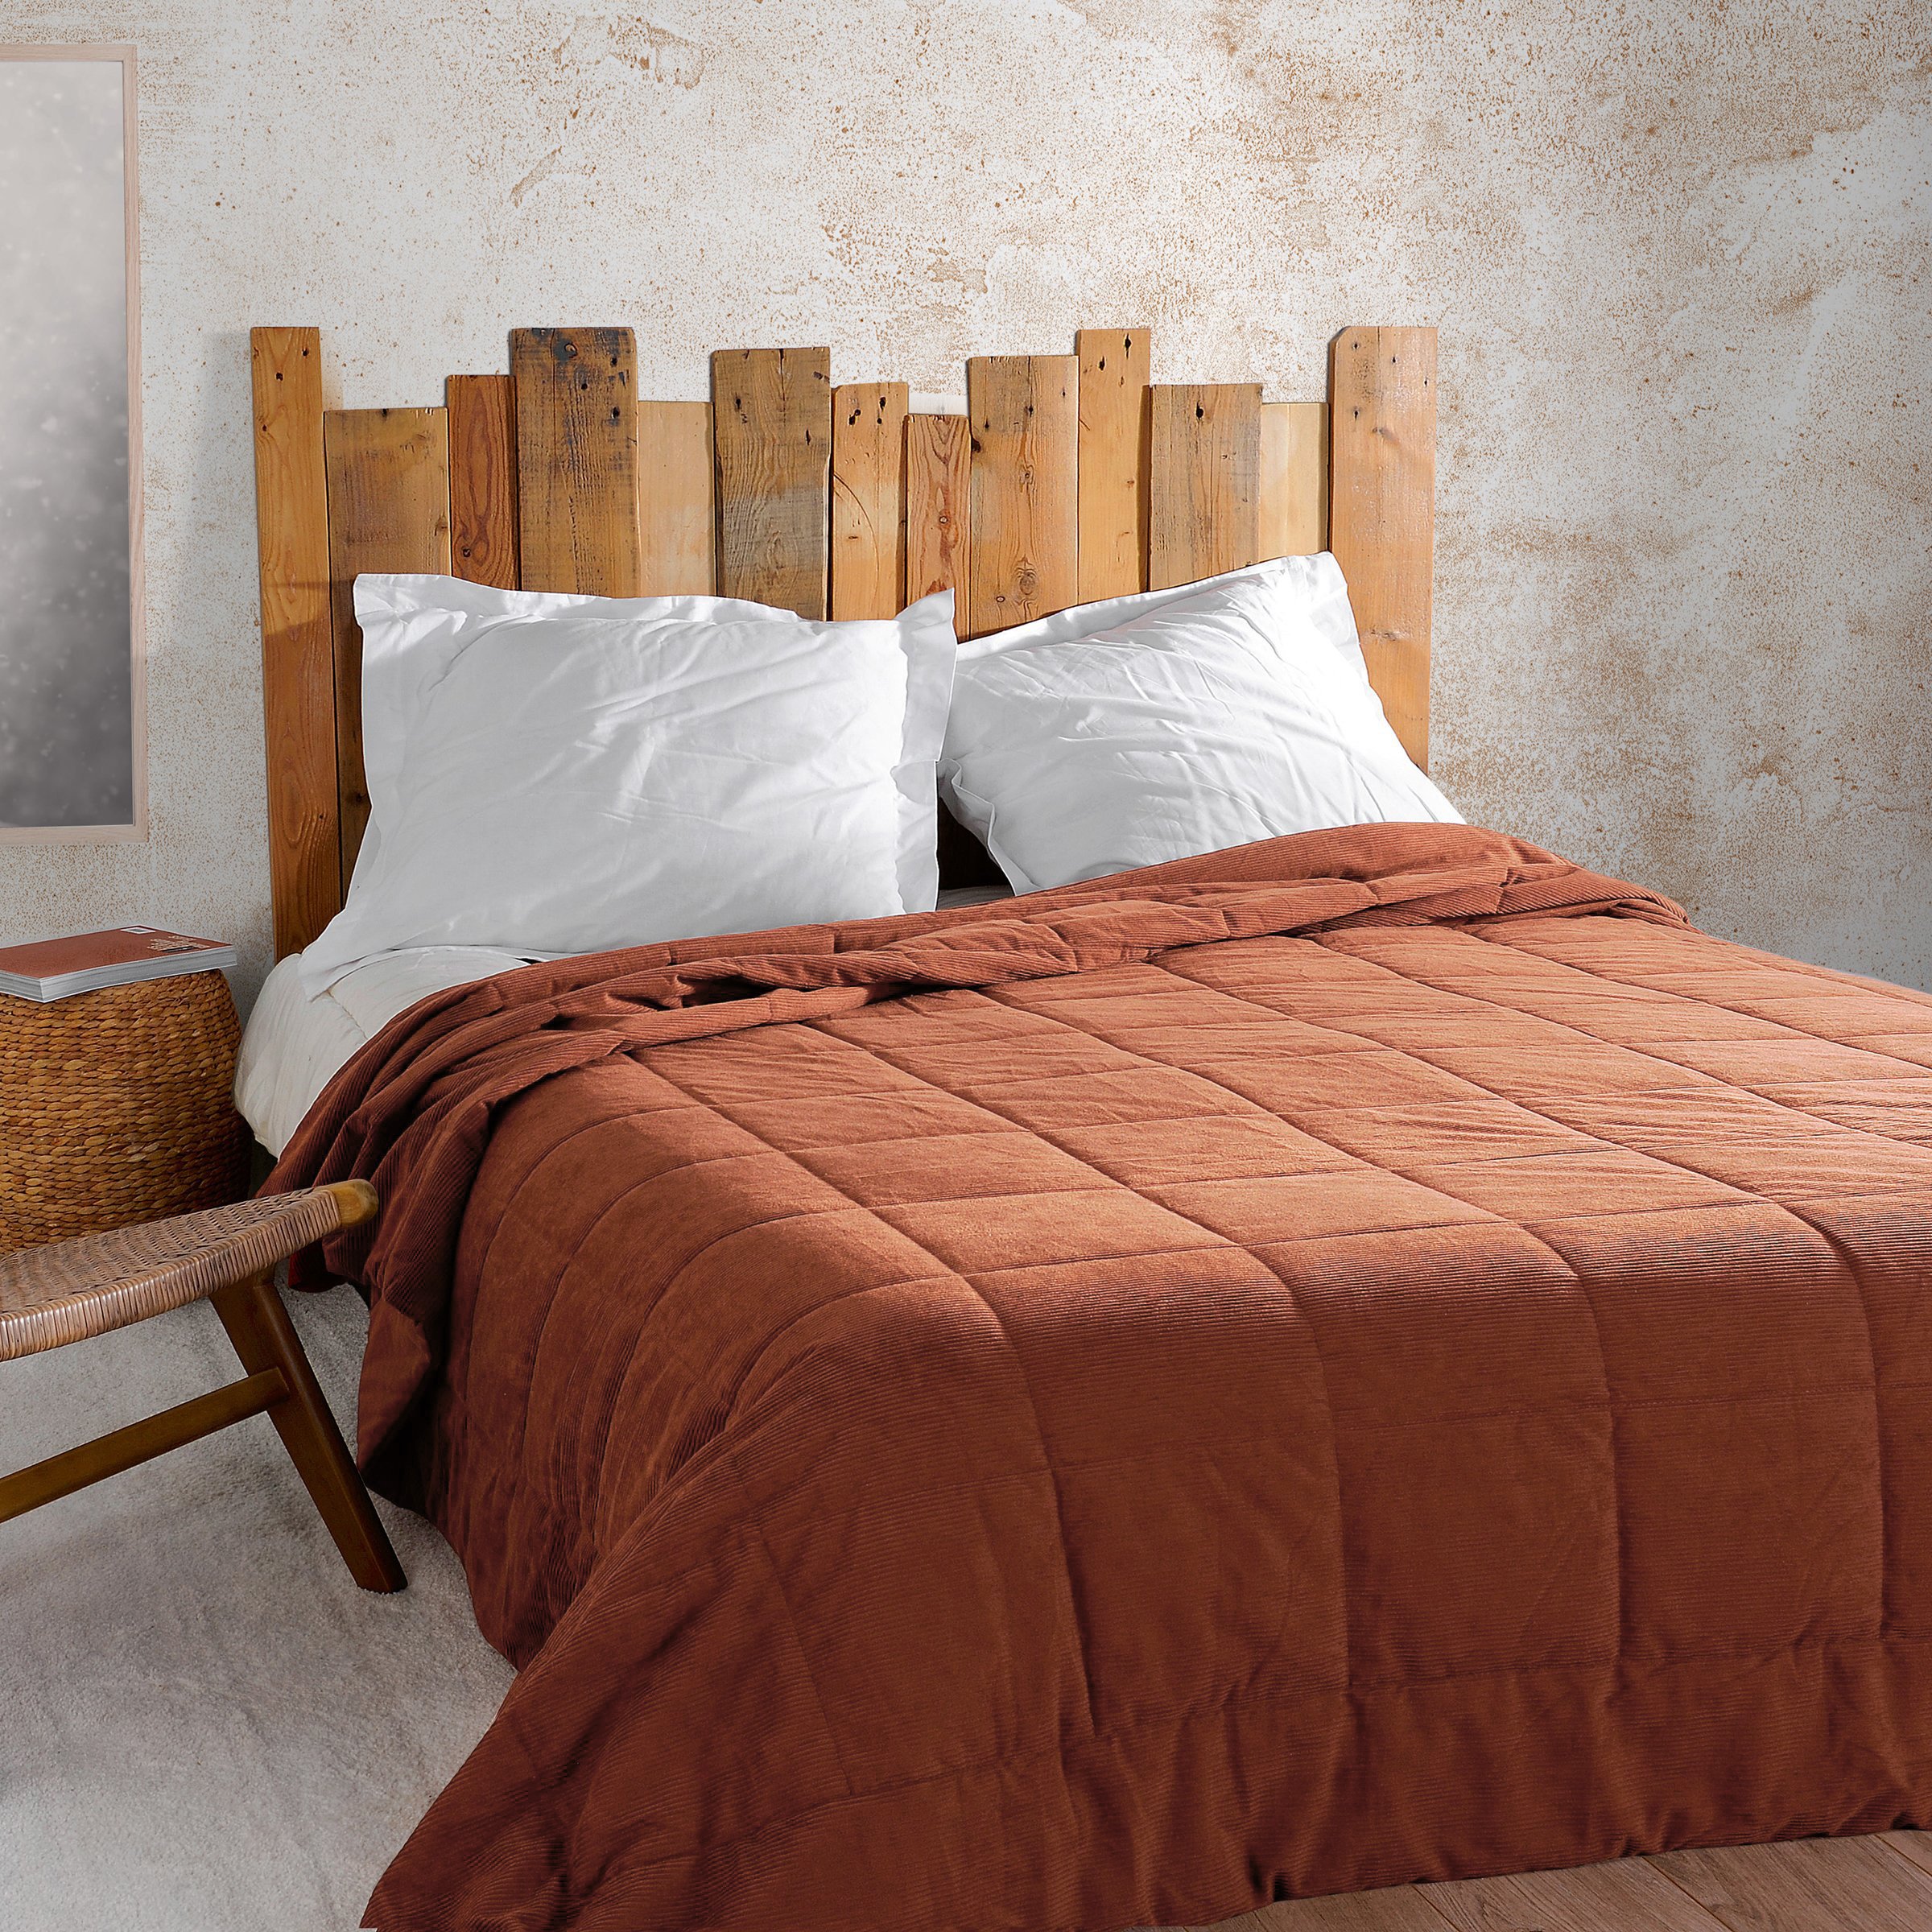 Tête de lit en bois déco chalet montagne home made wooden bed head